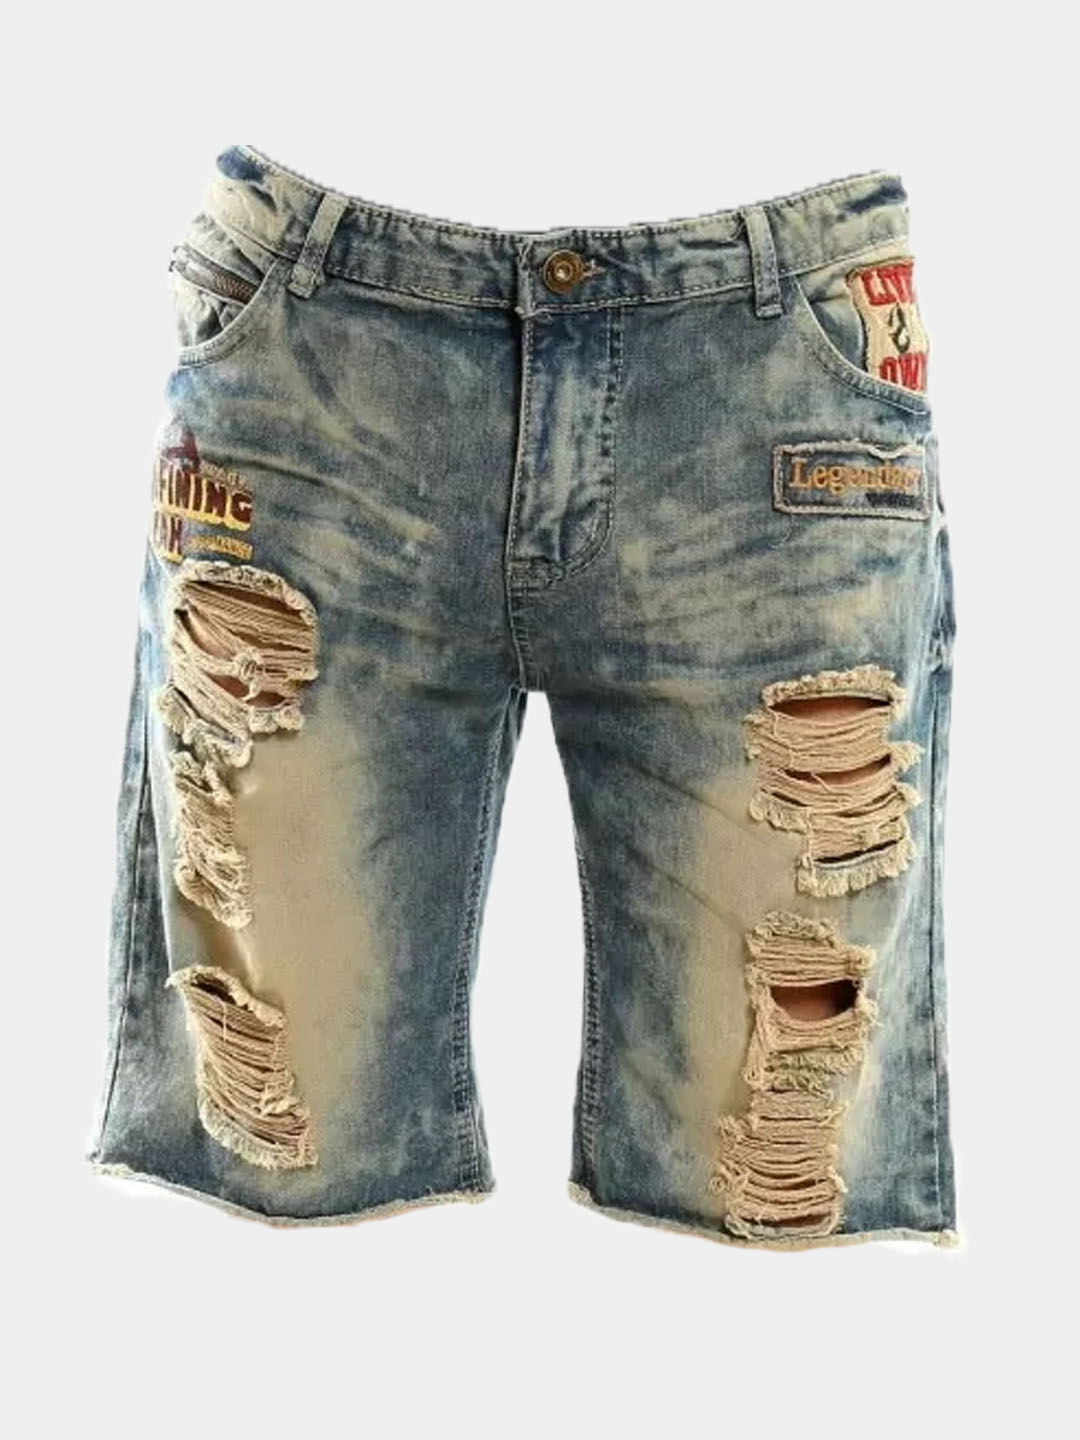 Шорты мужские джинсовые, рваные купить по цене 450 ₽ в интернет-магазине KazanExpress